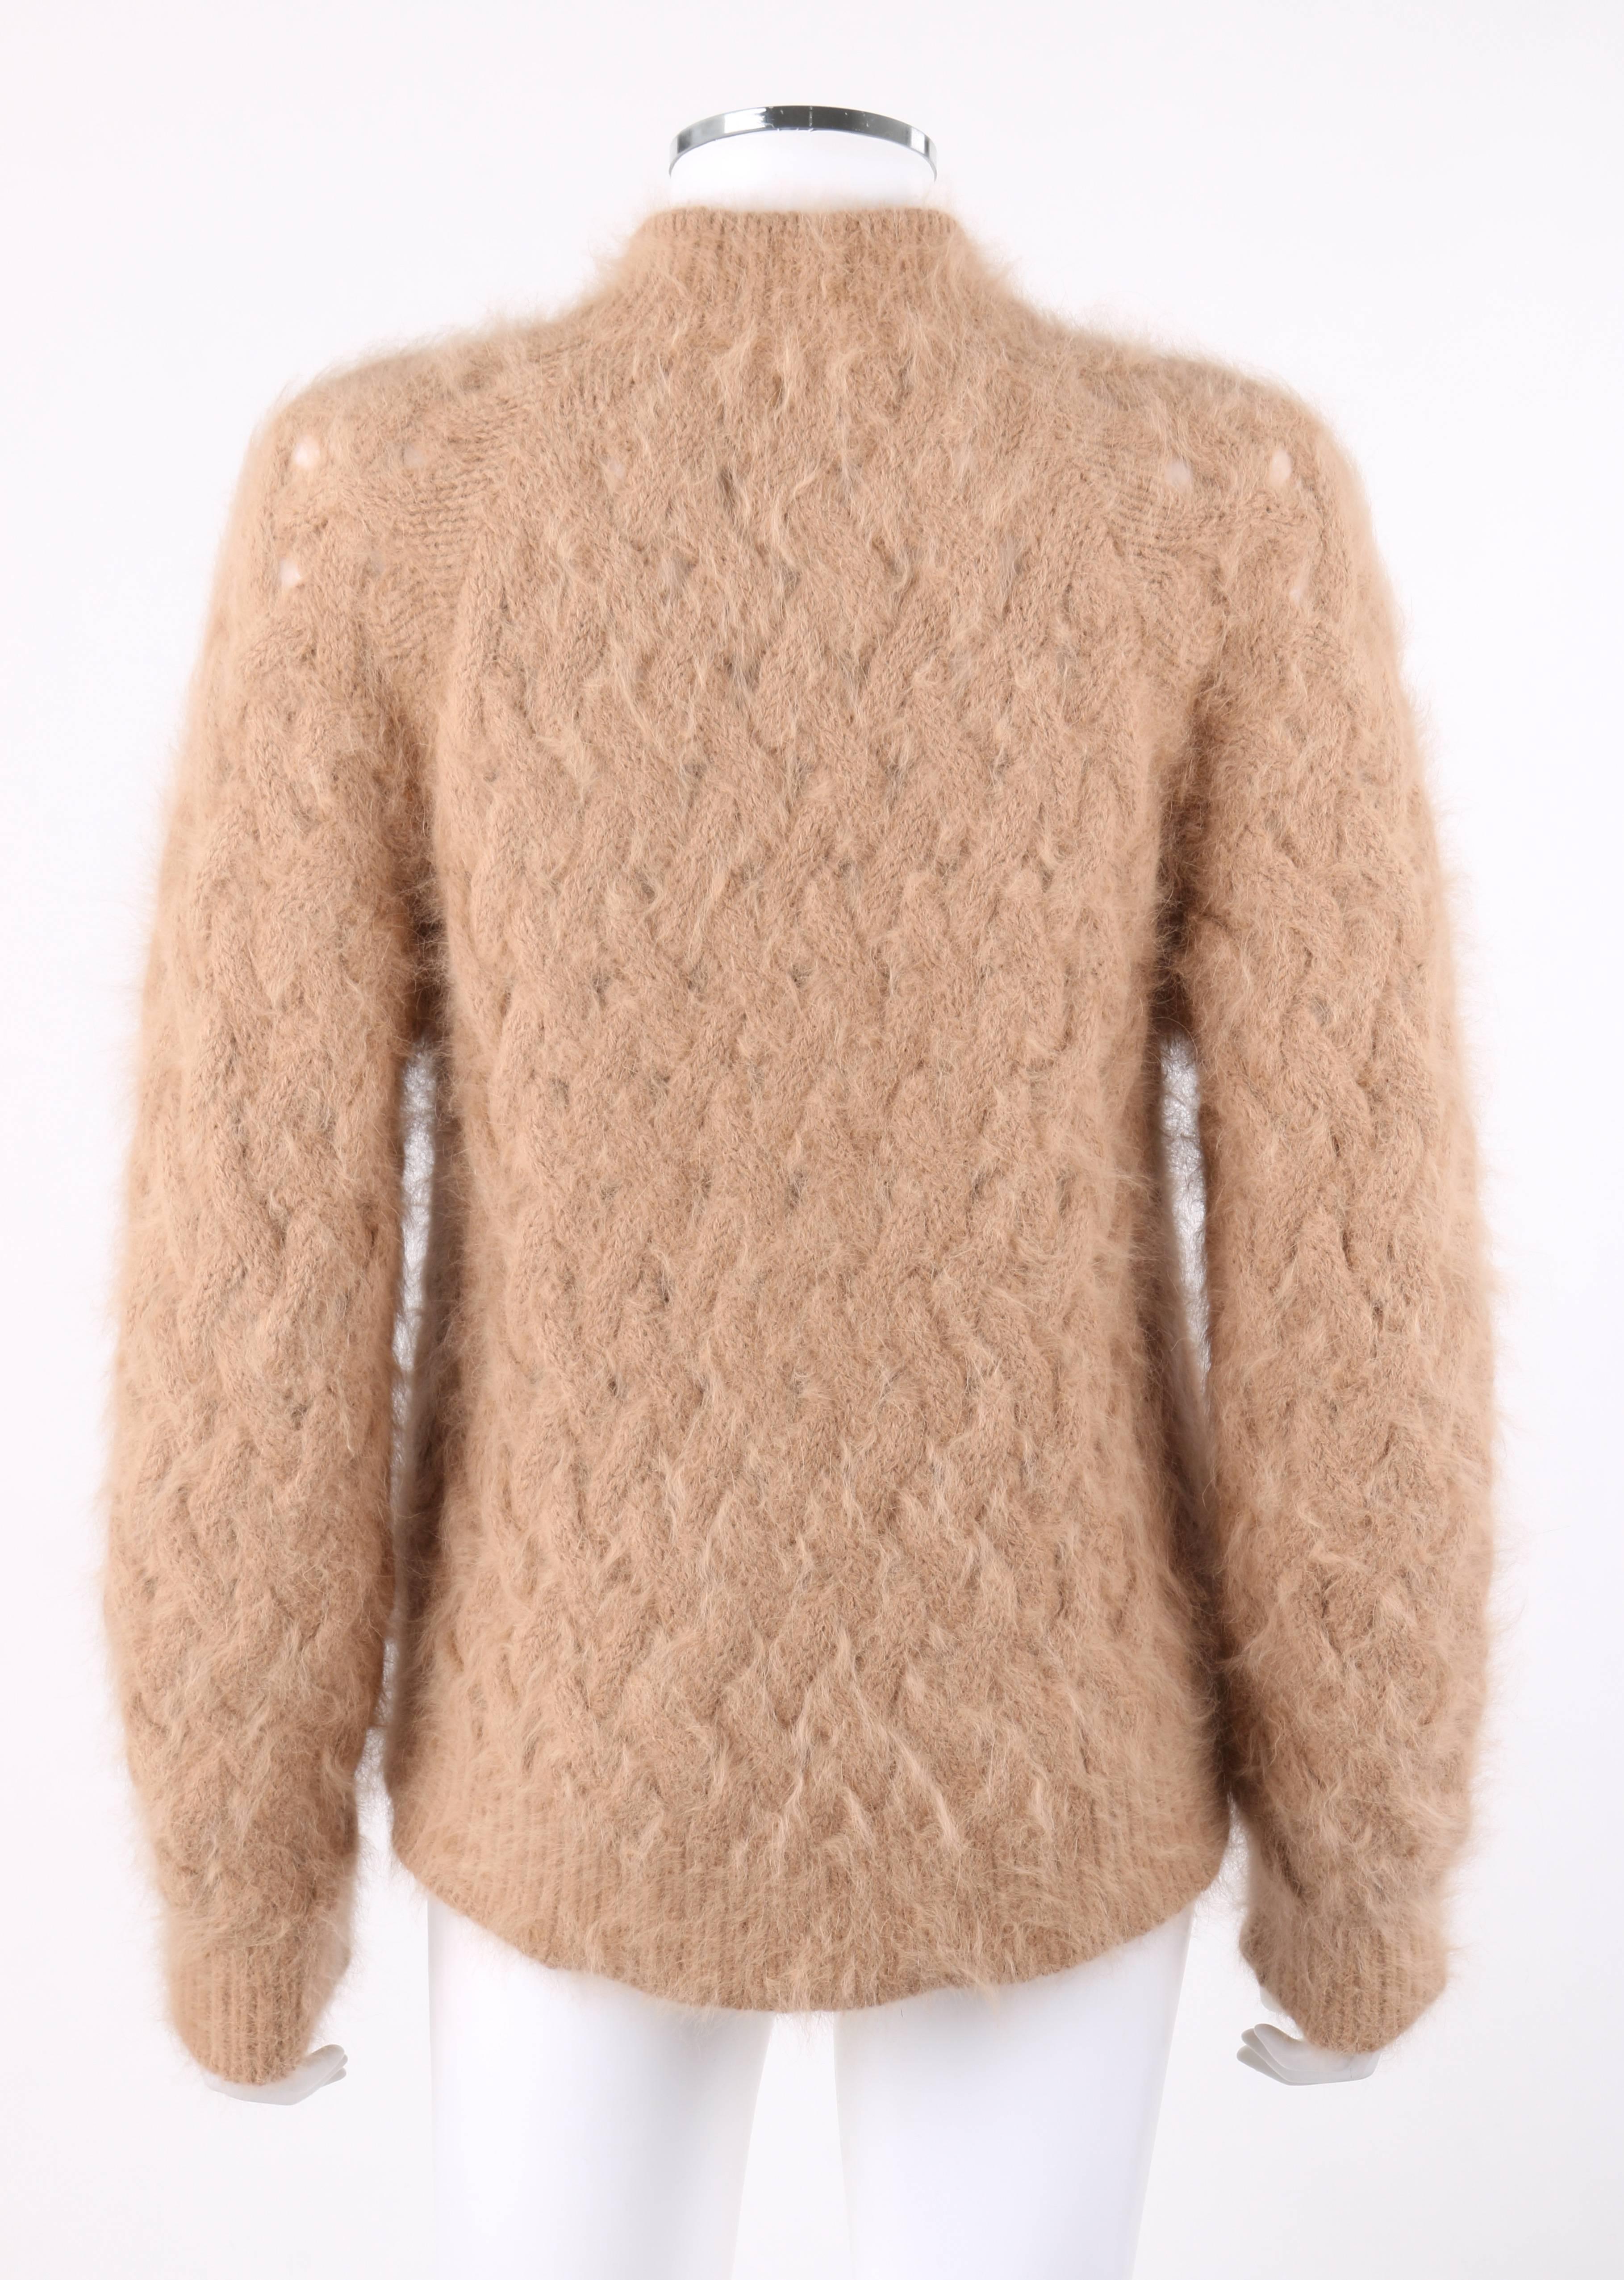 balmain knit sweater